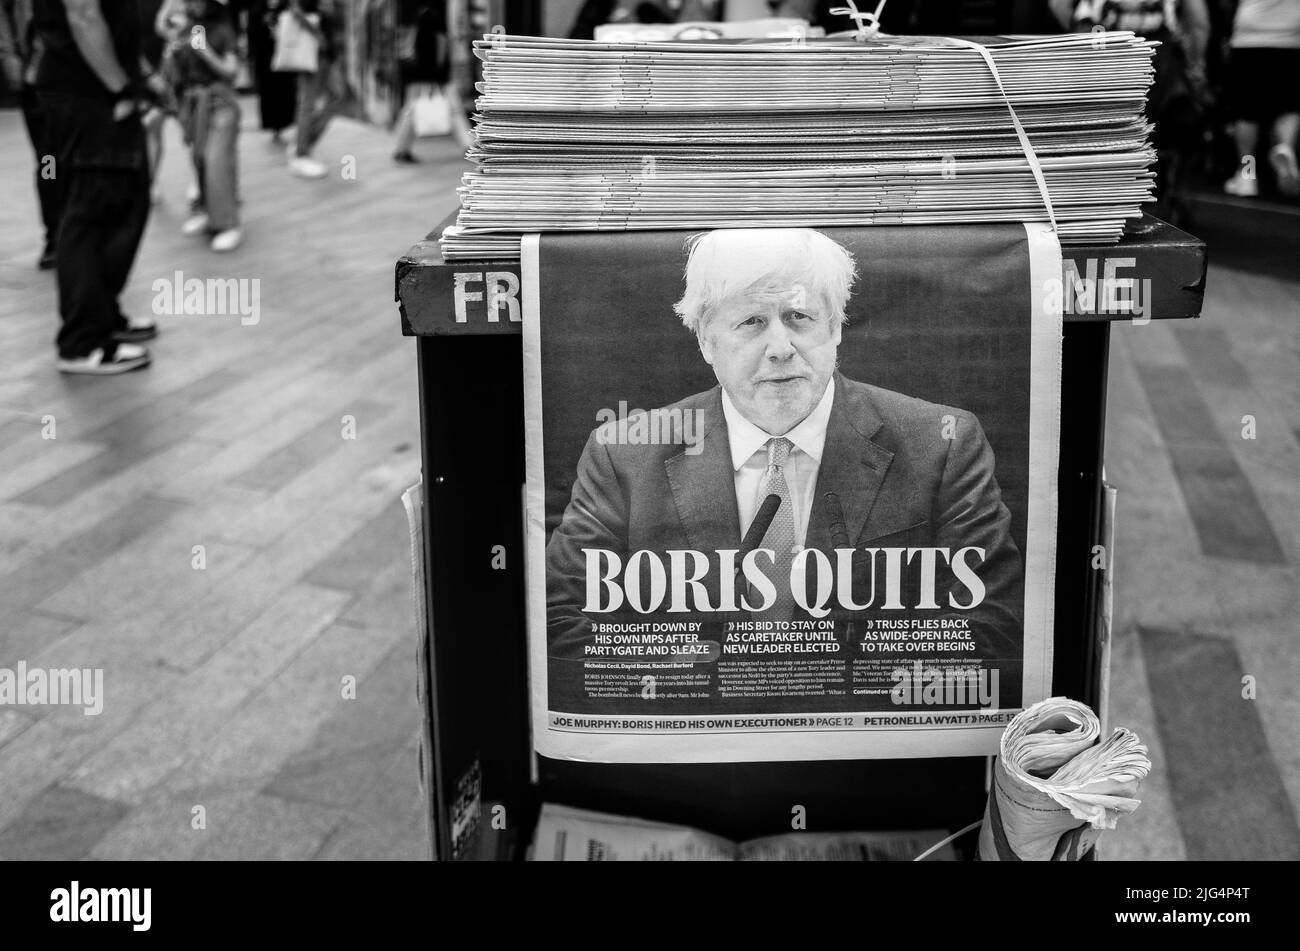 El Primer Ministro del Reino Unido, Boris Johnson, abandona el periódico Evening Standard Front Page Headline en los quioscos de Londres, Reino Unido Foto de stock